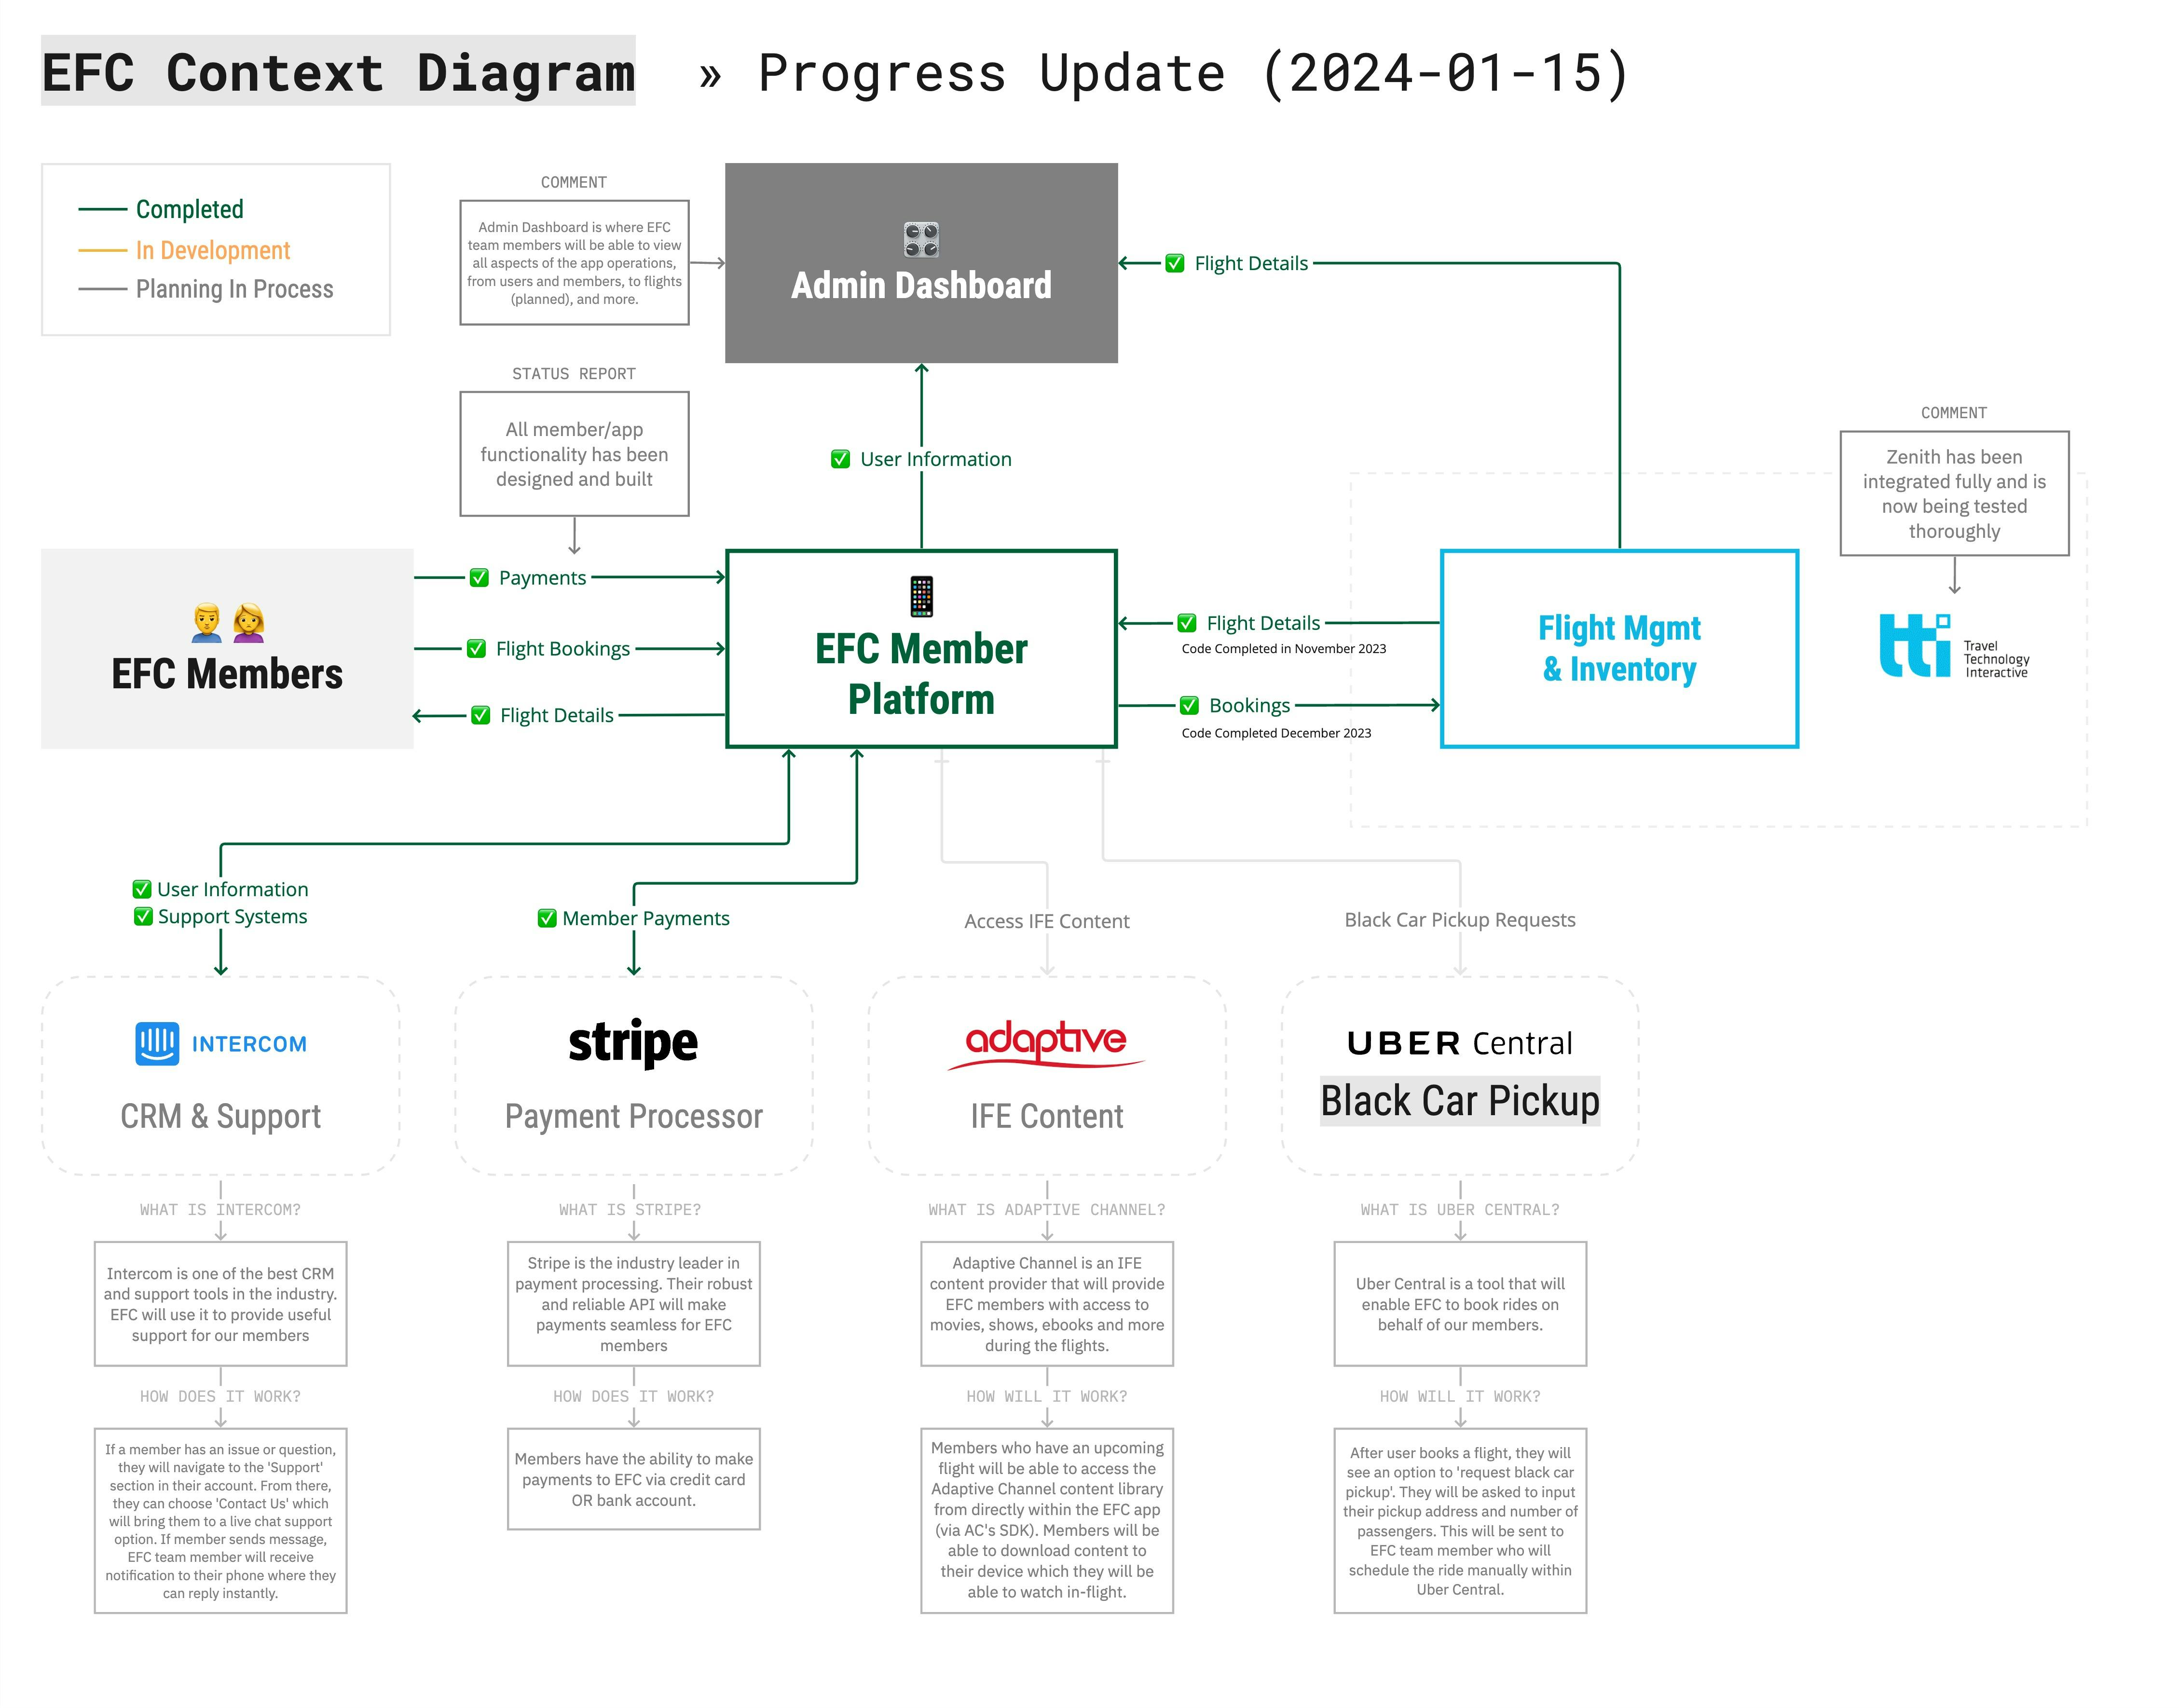 EFC Context Diagrams - Progress Update (2024-01-15).jpg